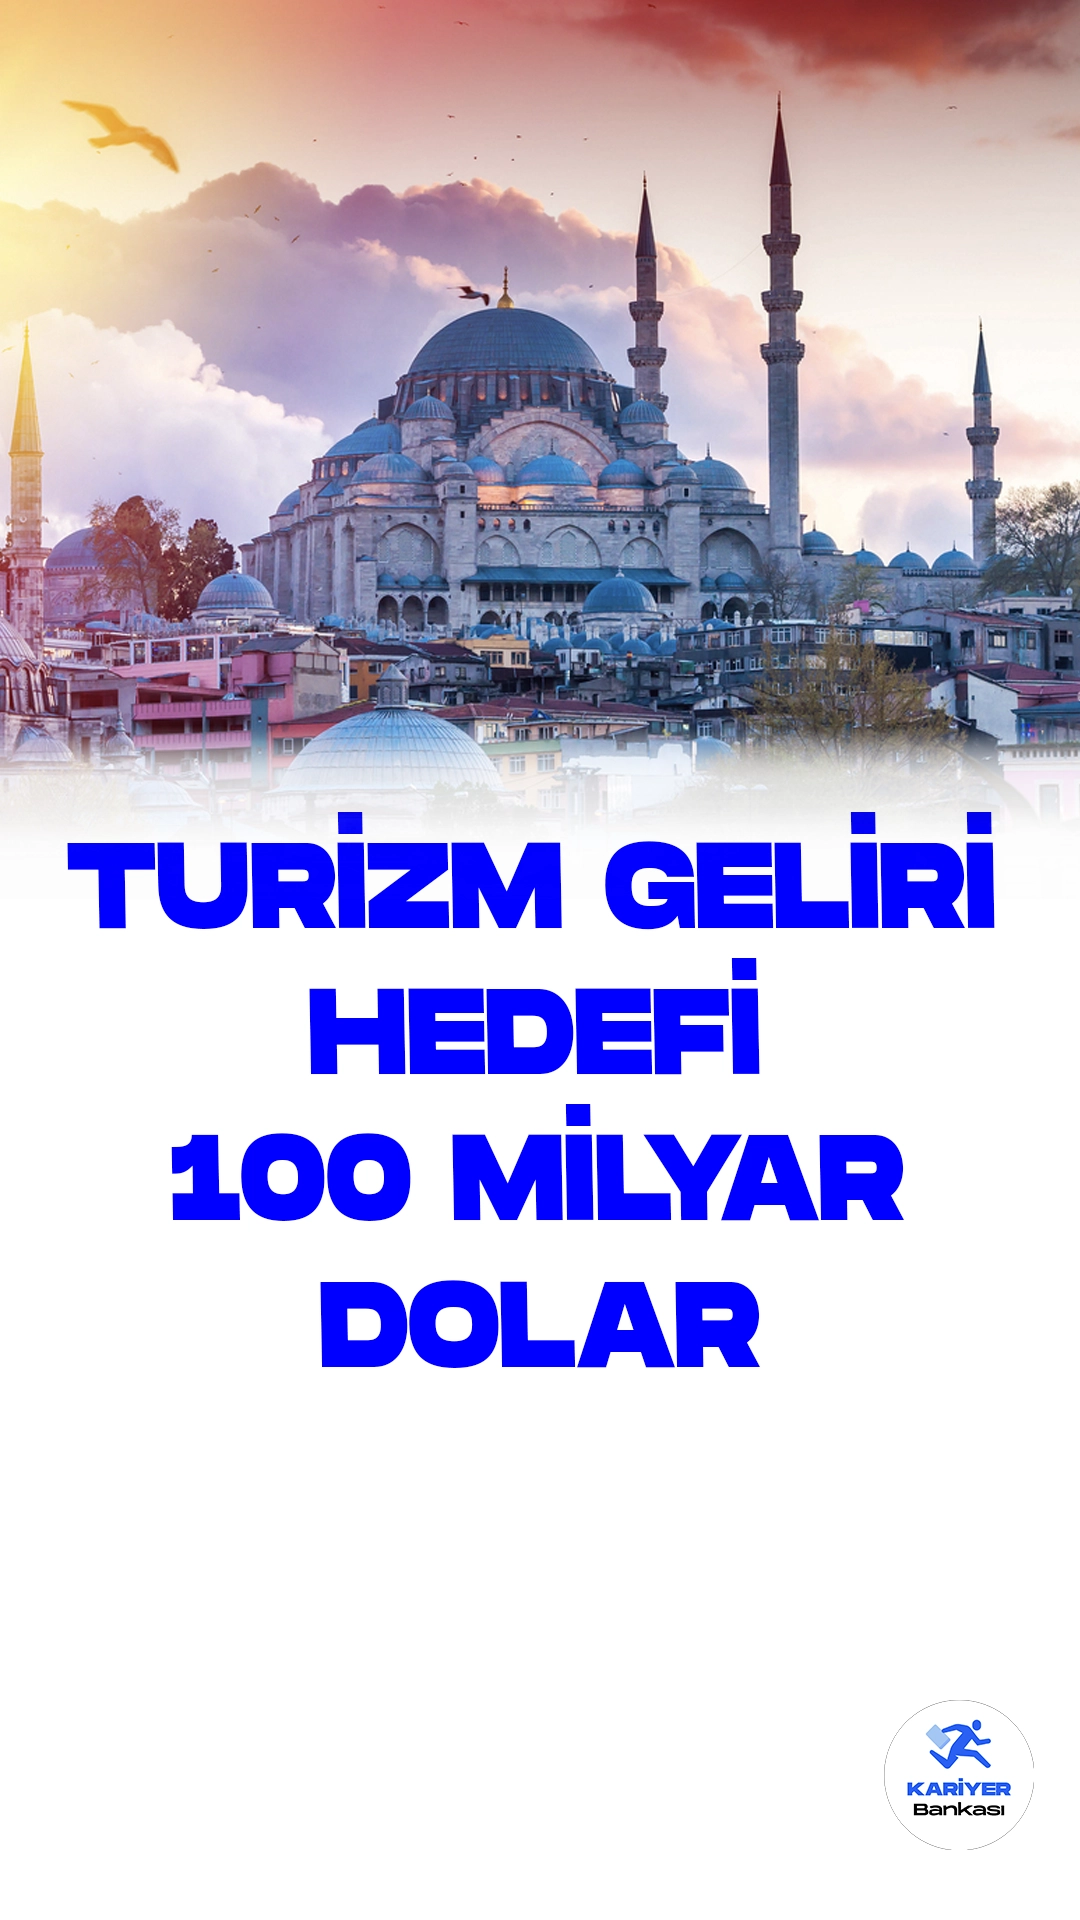 Türkiye'nin Turizm Gelirinin 2028'de 100 Milyar Doları Olması Hedefleniyor.Türkiye, turizm sektöründe büyük hedeflere doğru ilerliyor. 12. Kalkınma Planı (2024-2028), Cumhurbaşkanı Recep Tayyip Erdoğan'ın onayının ardından TBMM'ye sunuldu ve bu planla birlikte 2028 yılına dair hedefler belirlendi. Türkiye'nin turizm geliri 2028'de 100 milyar doları aşmayı, ziyaretçi sayısının ise 82,3 milyonu bulmayı amaçlıyor.